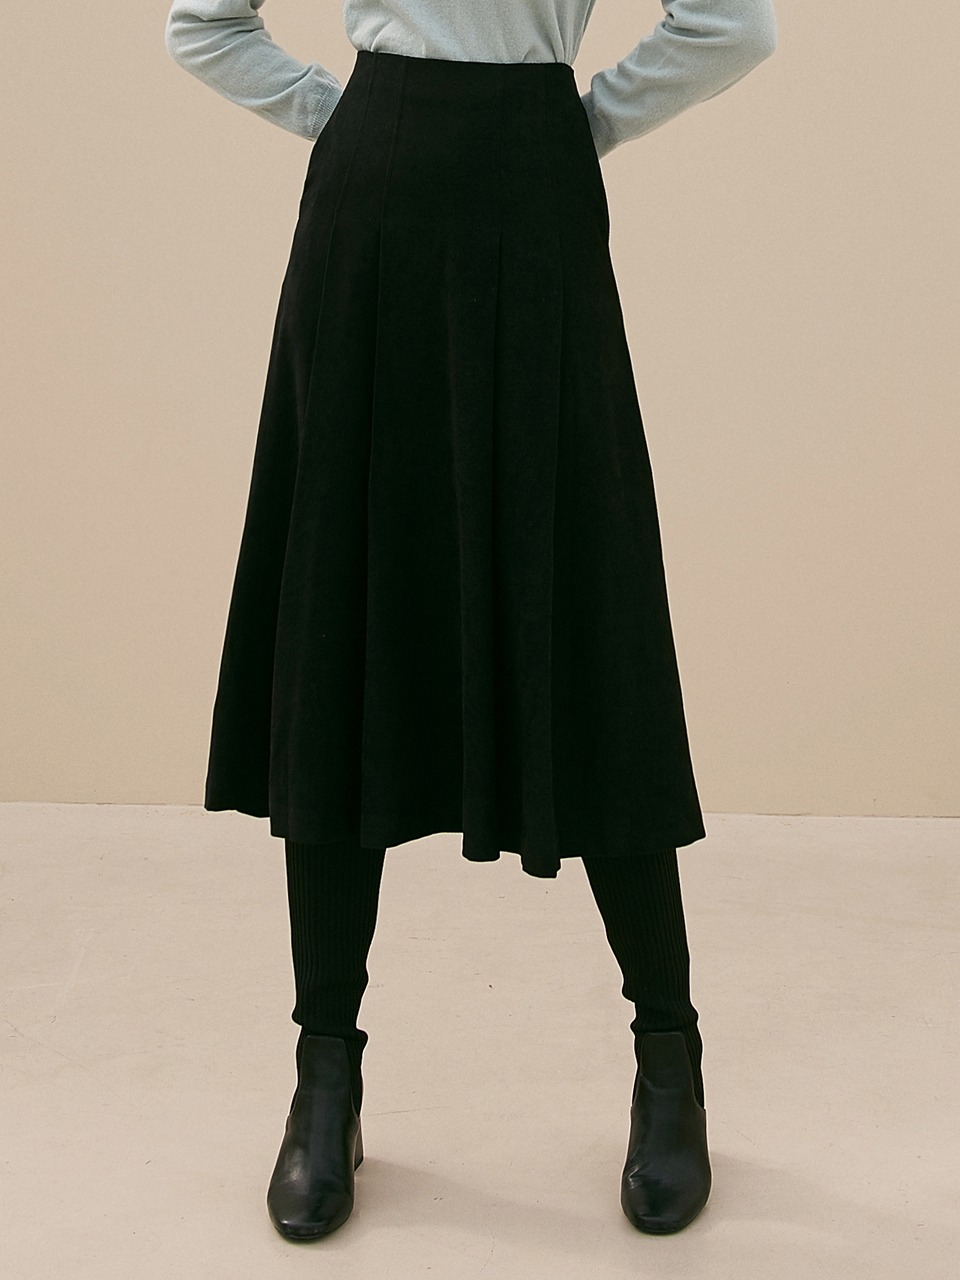 j860 pleats long skirt (black)